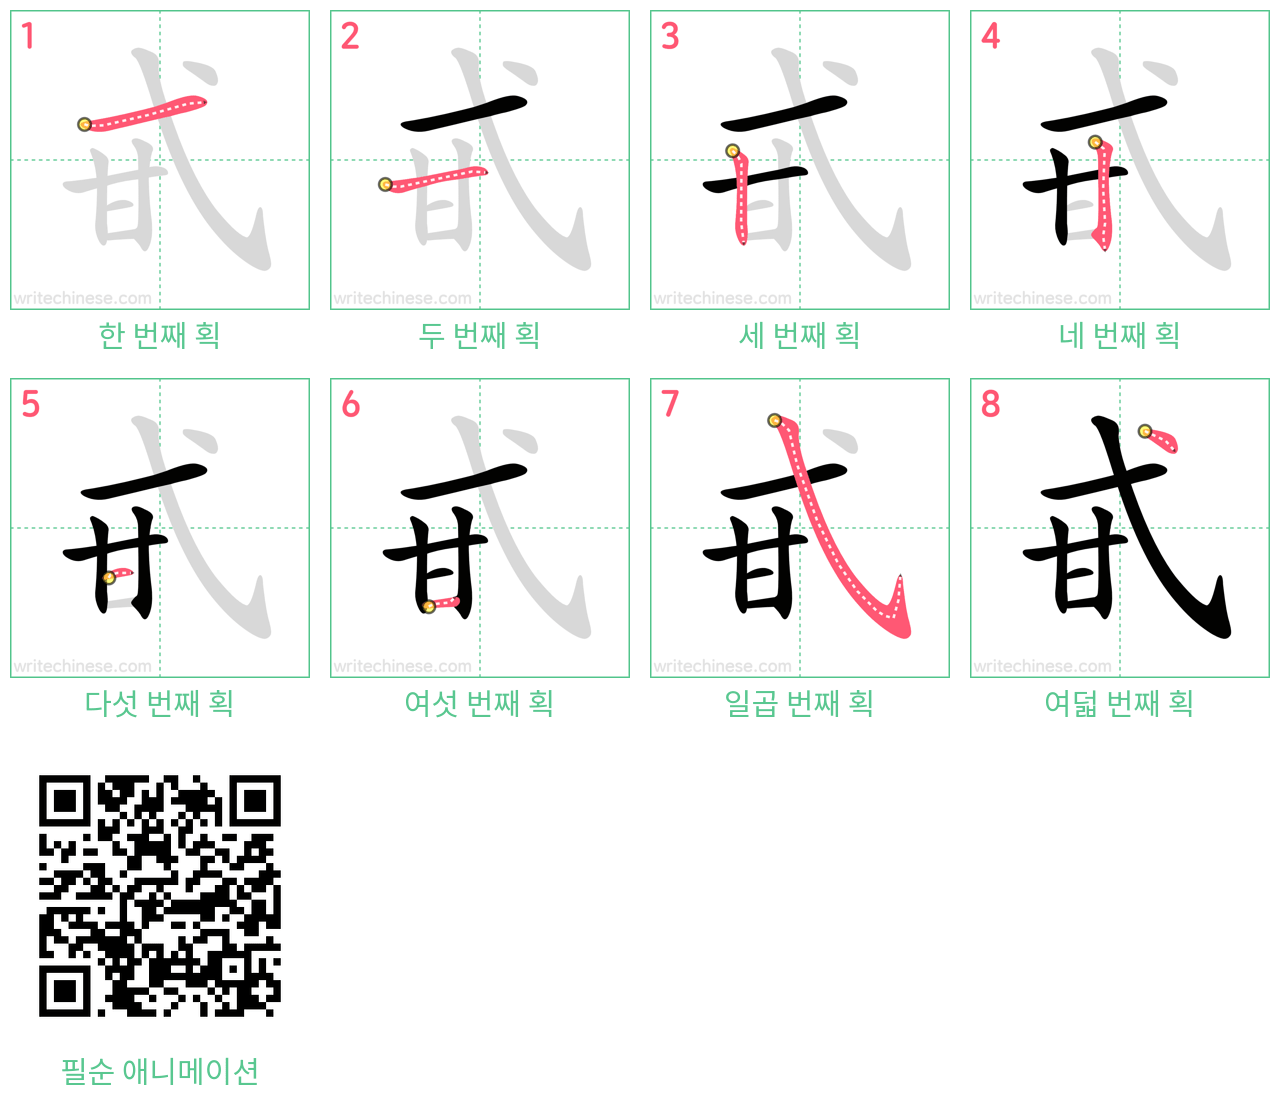 甙 step-by-step stroke order diagrams